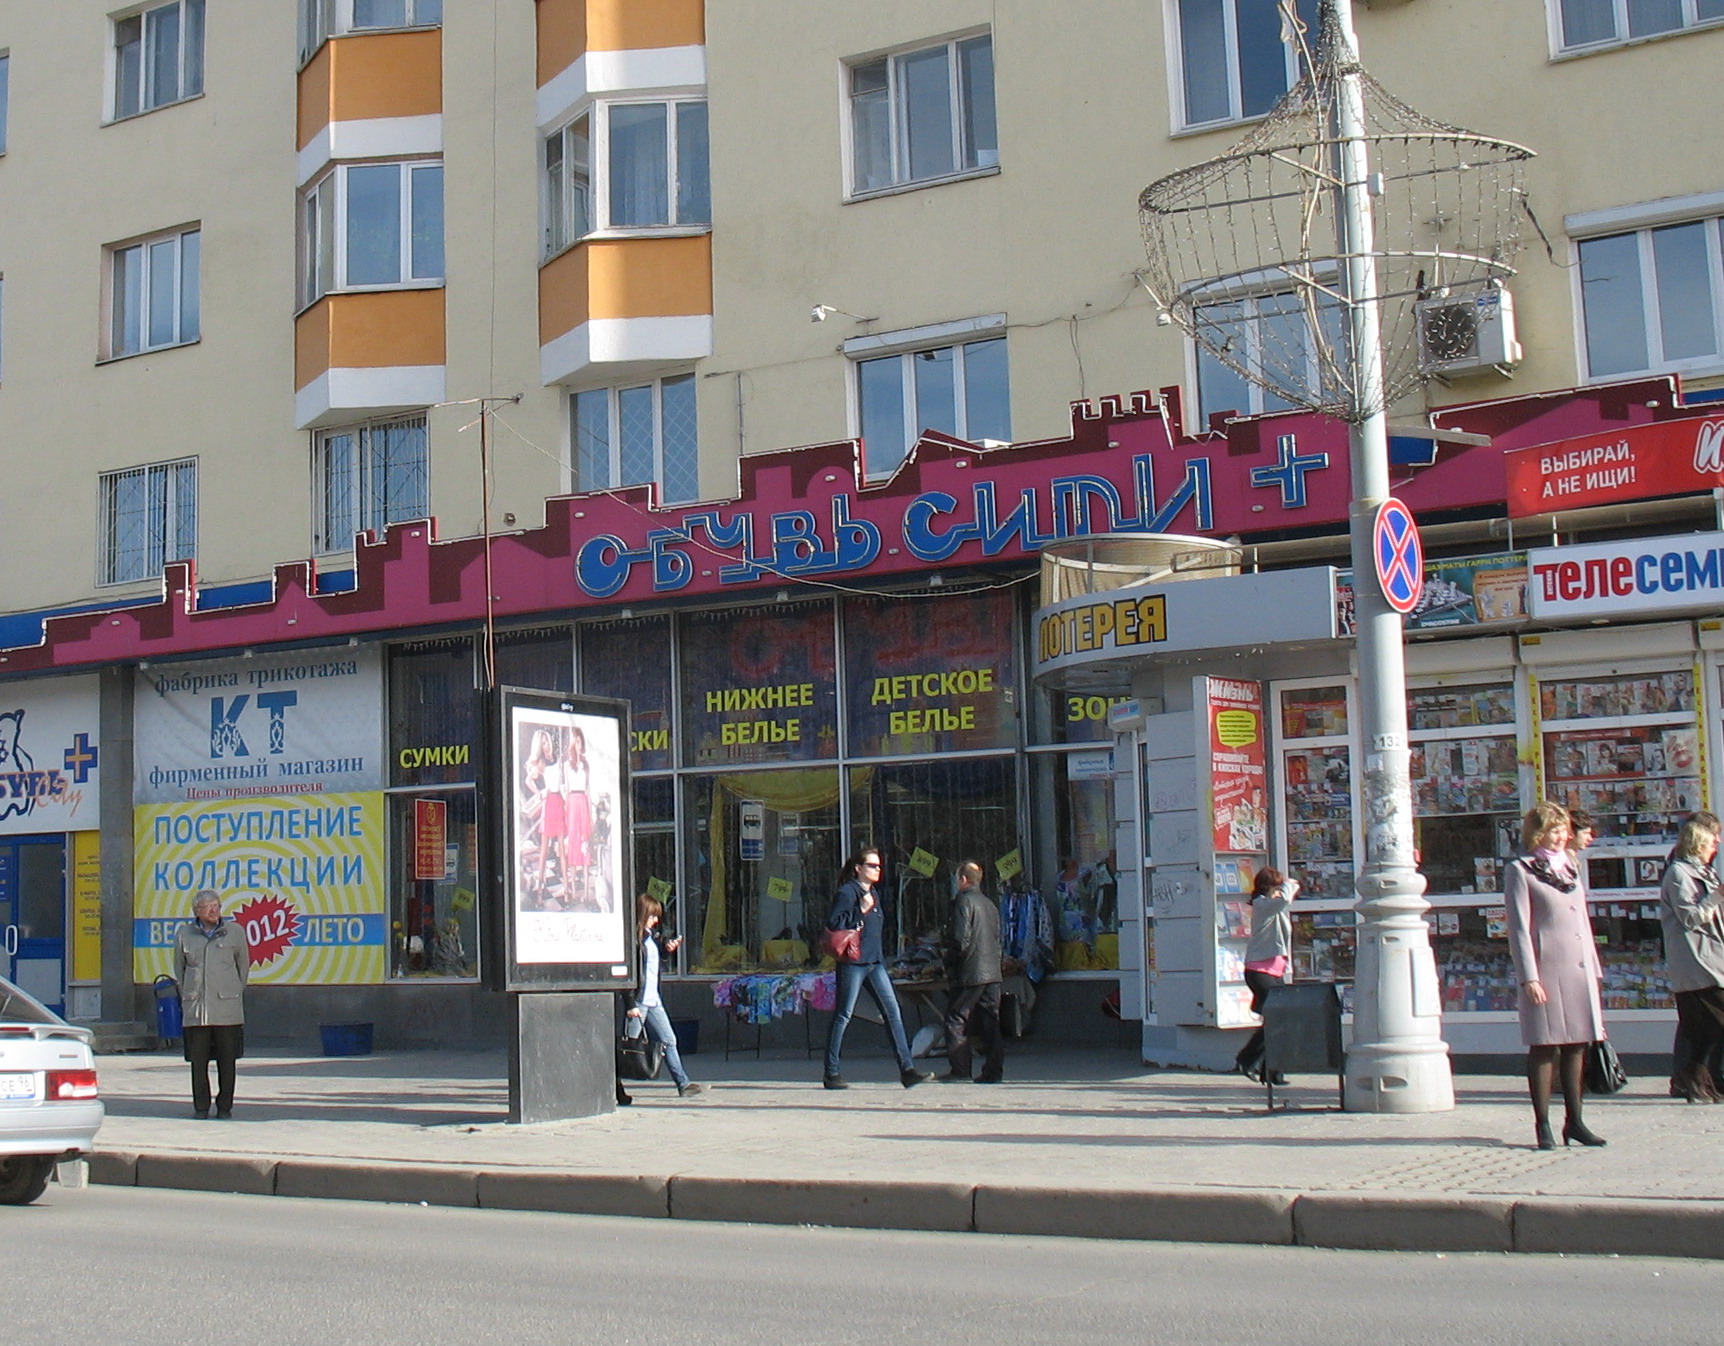 Где В Екатеринбурге Магазин